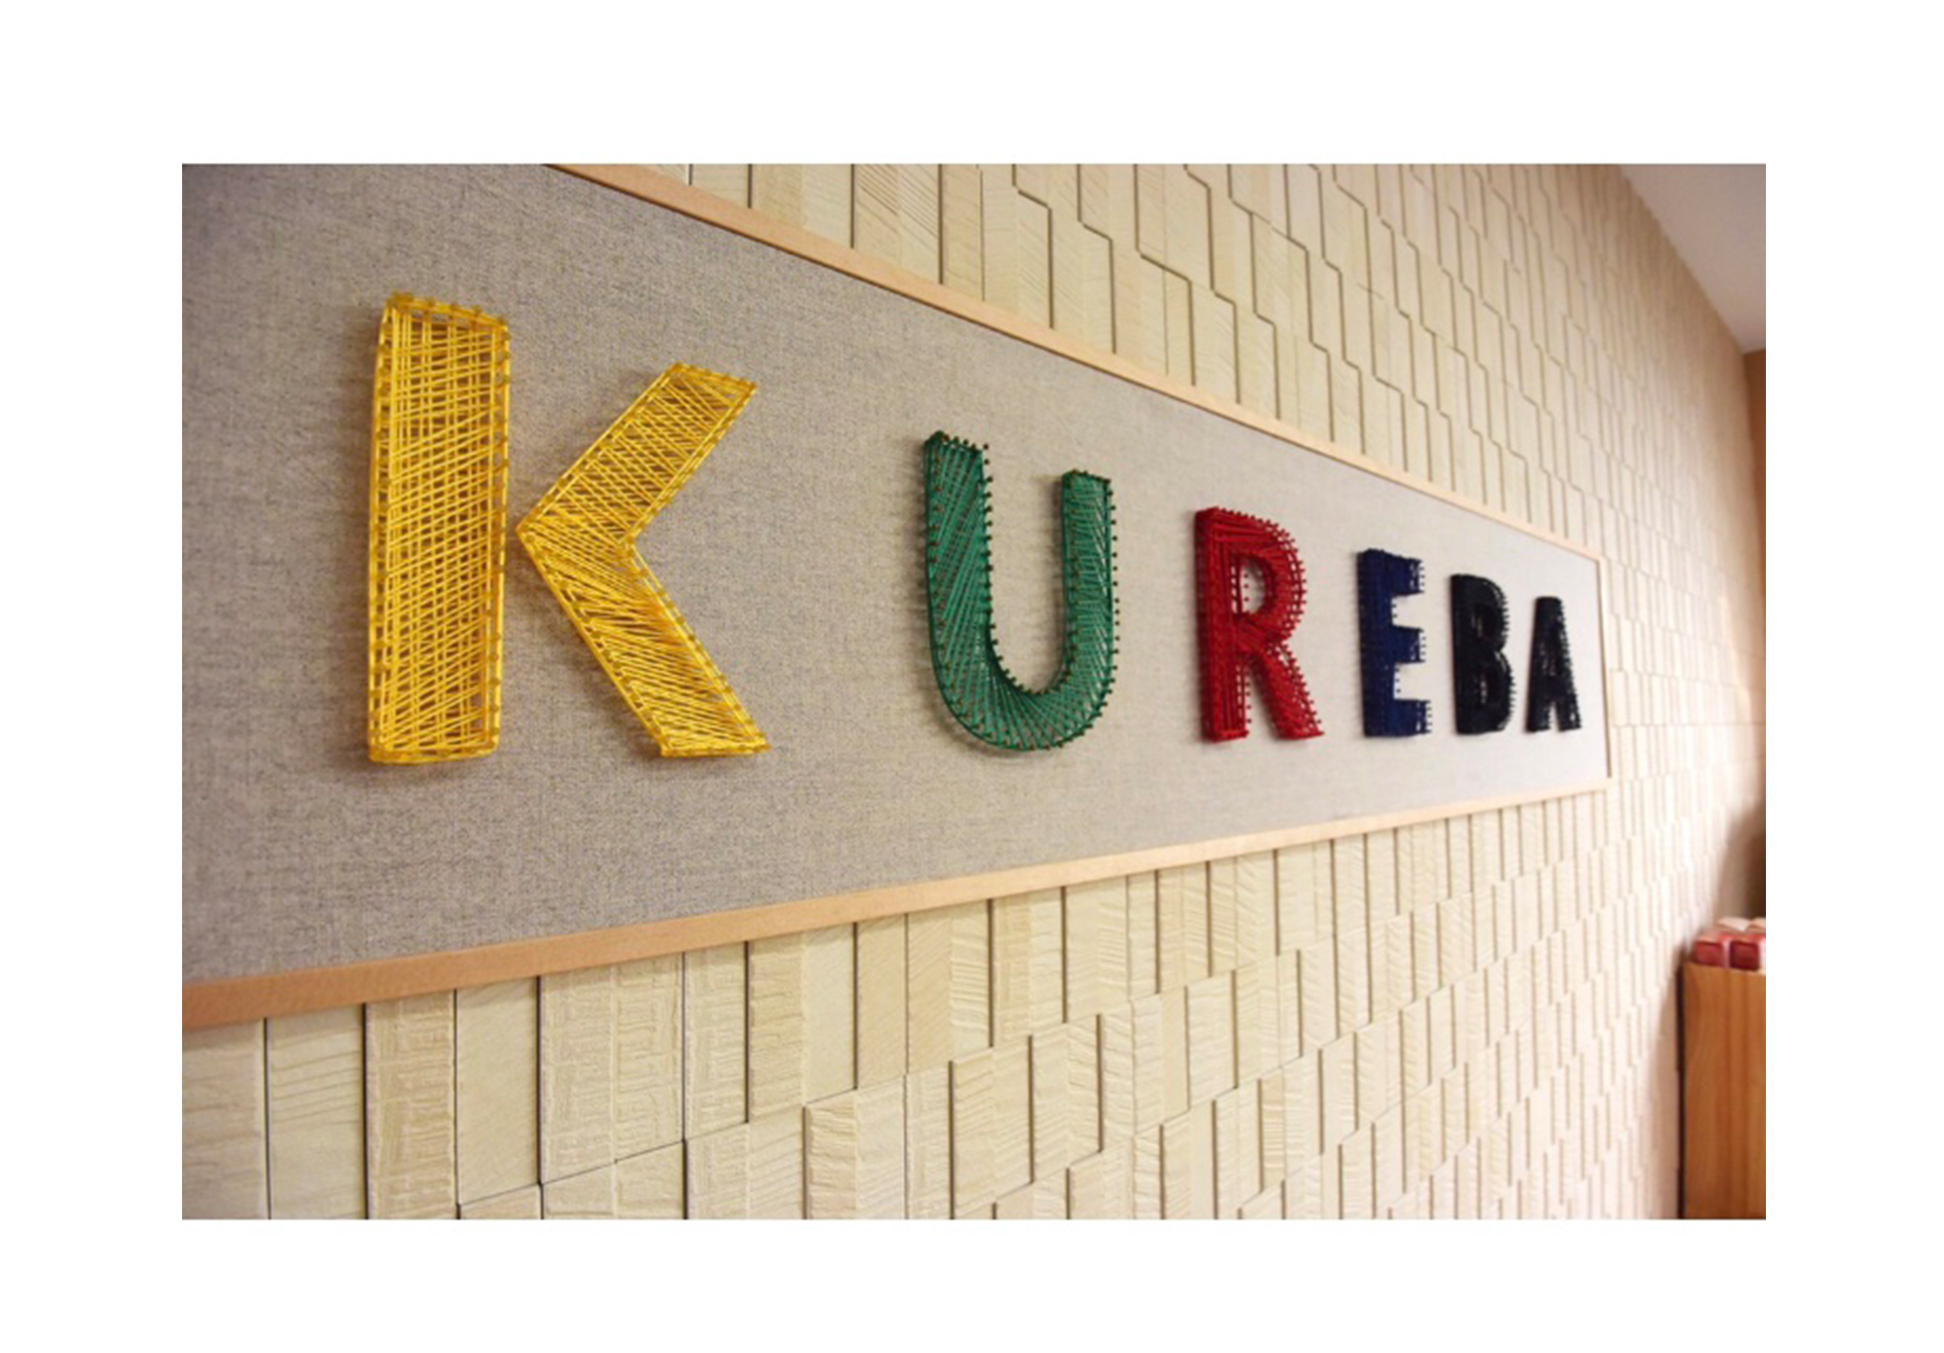 呉市の自習室・勉強スペース　有料自習室KUREBA（くれば）